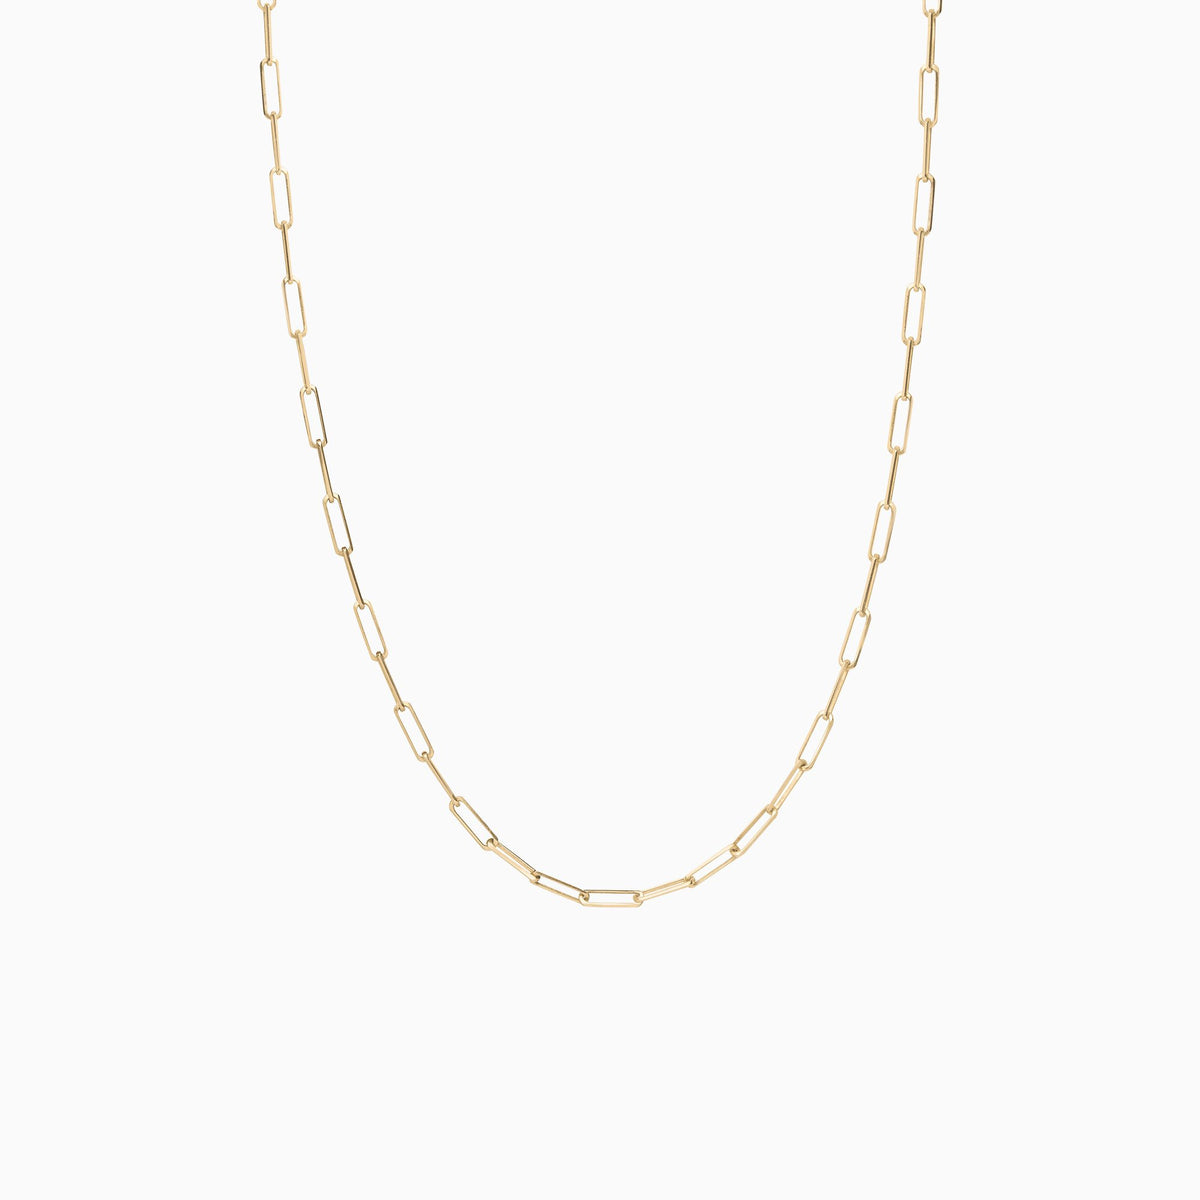 Nessa Designs Jewelry | Necklaces | Atlantic Pebble &amp; Diamond Pendant